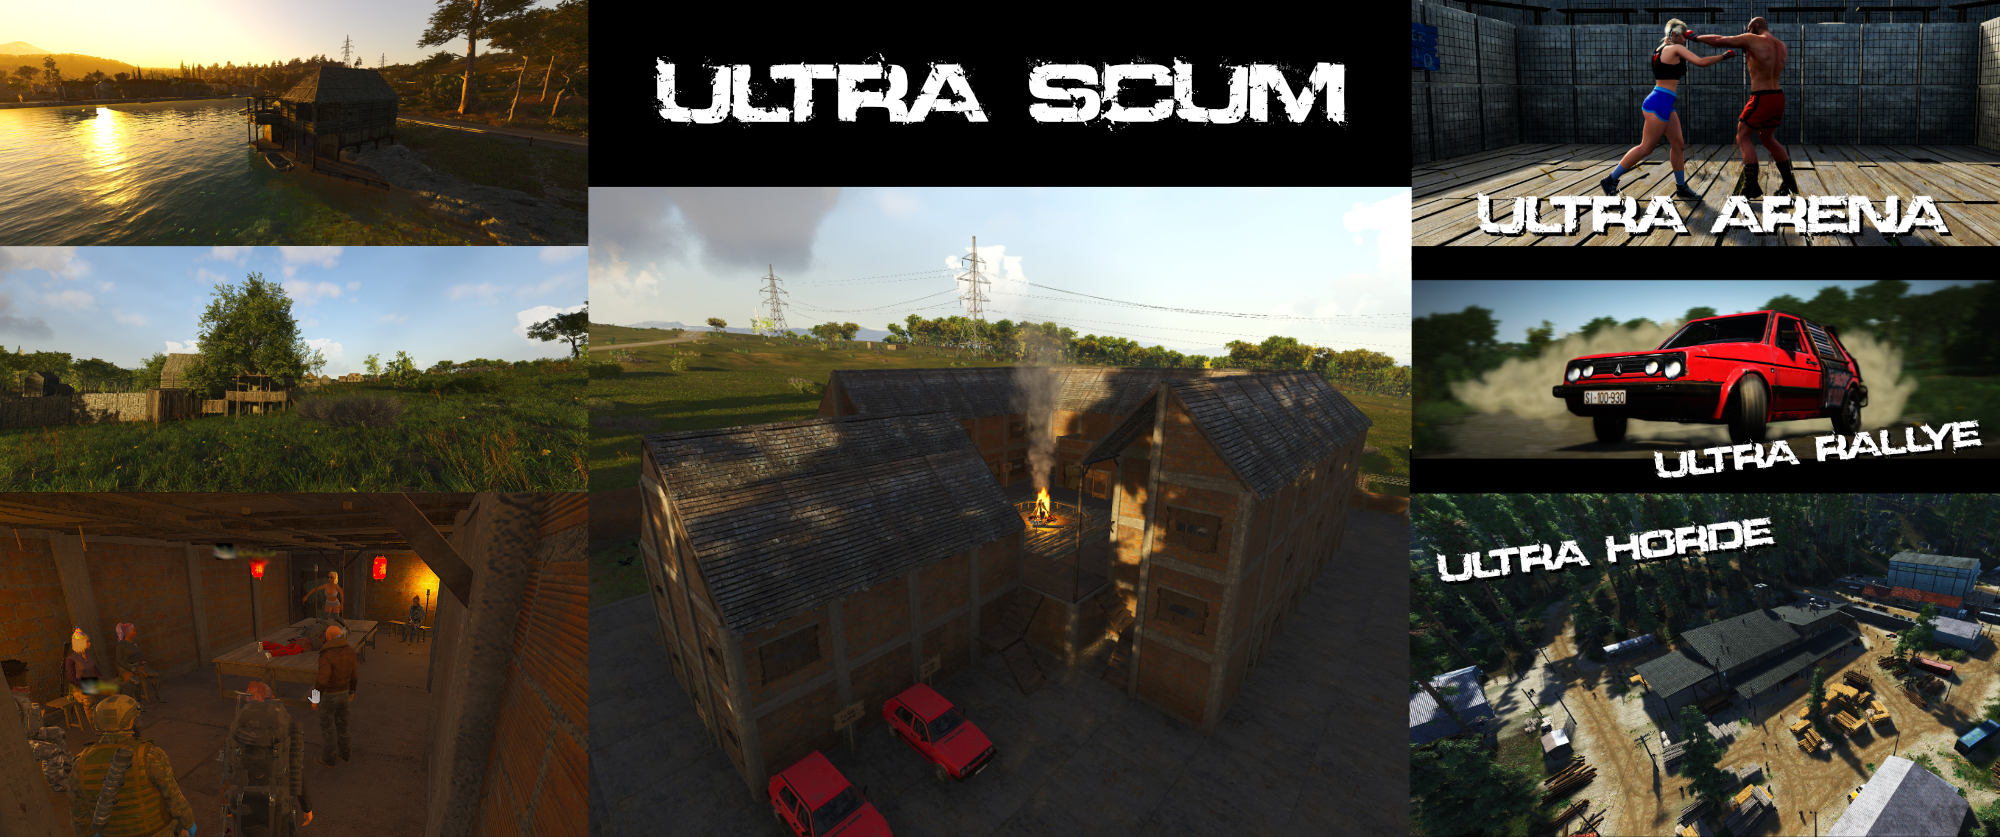 ULTRA SCUM IMPRESSIONS